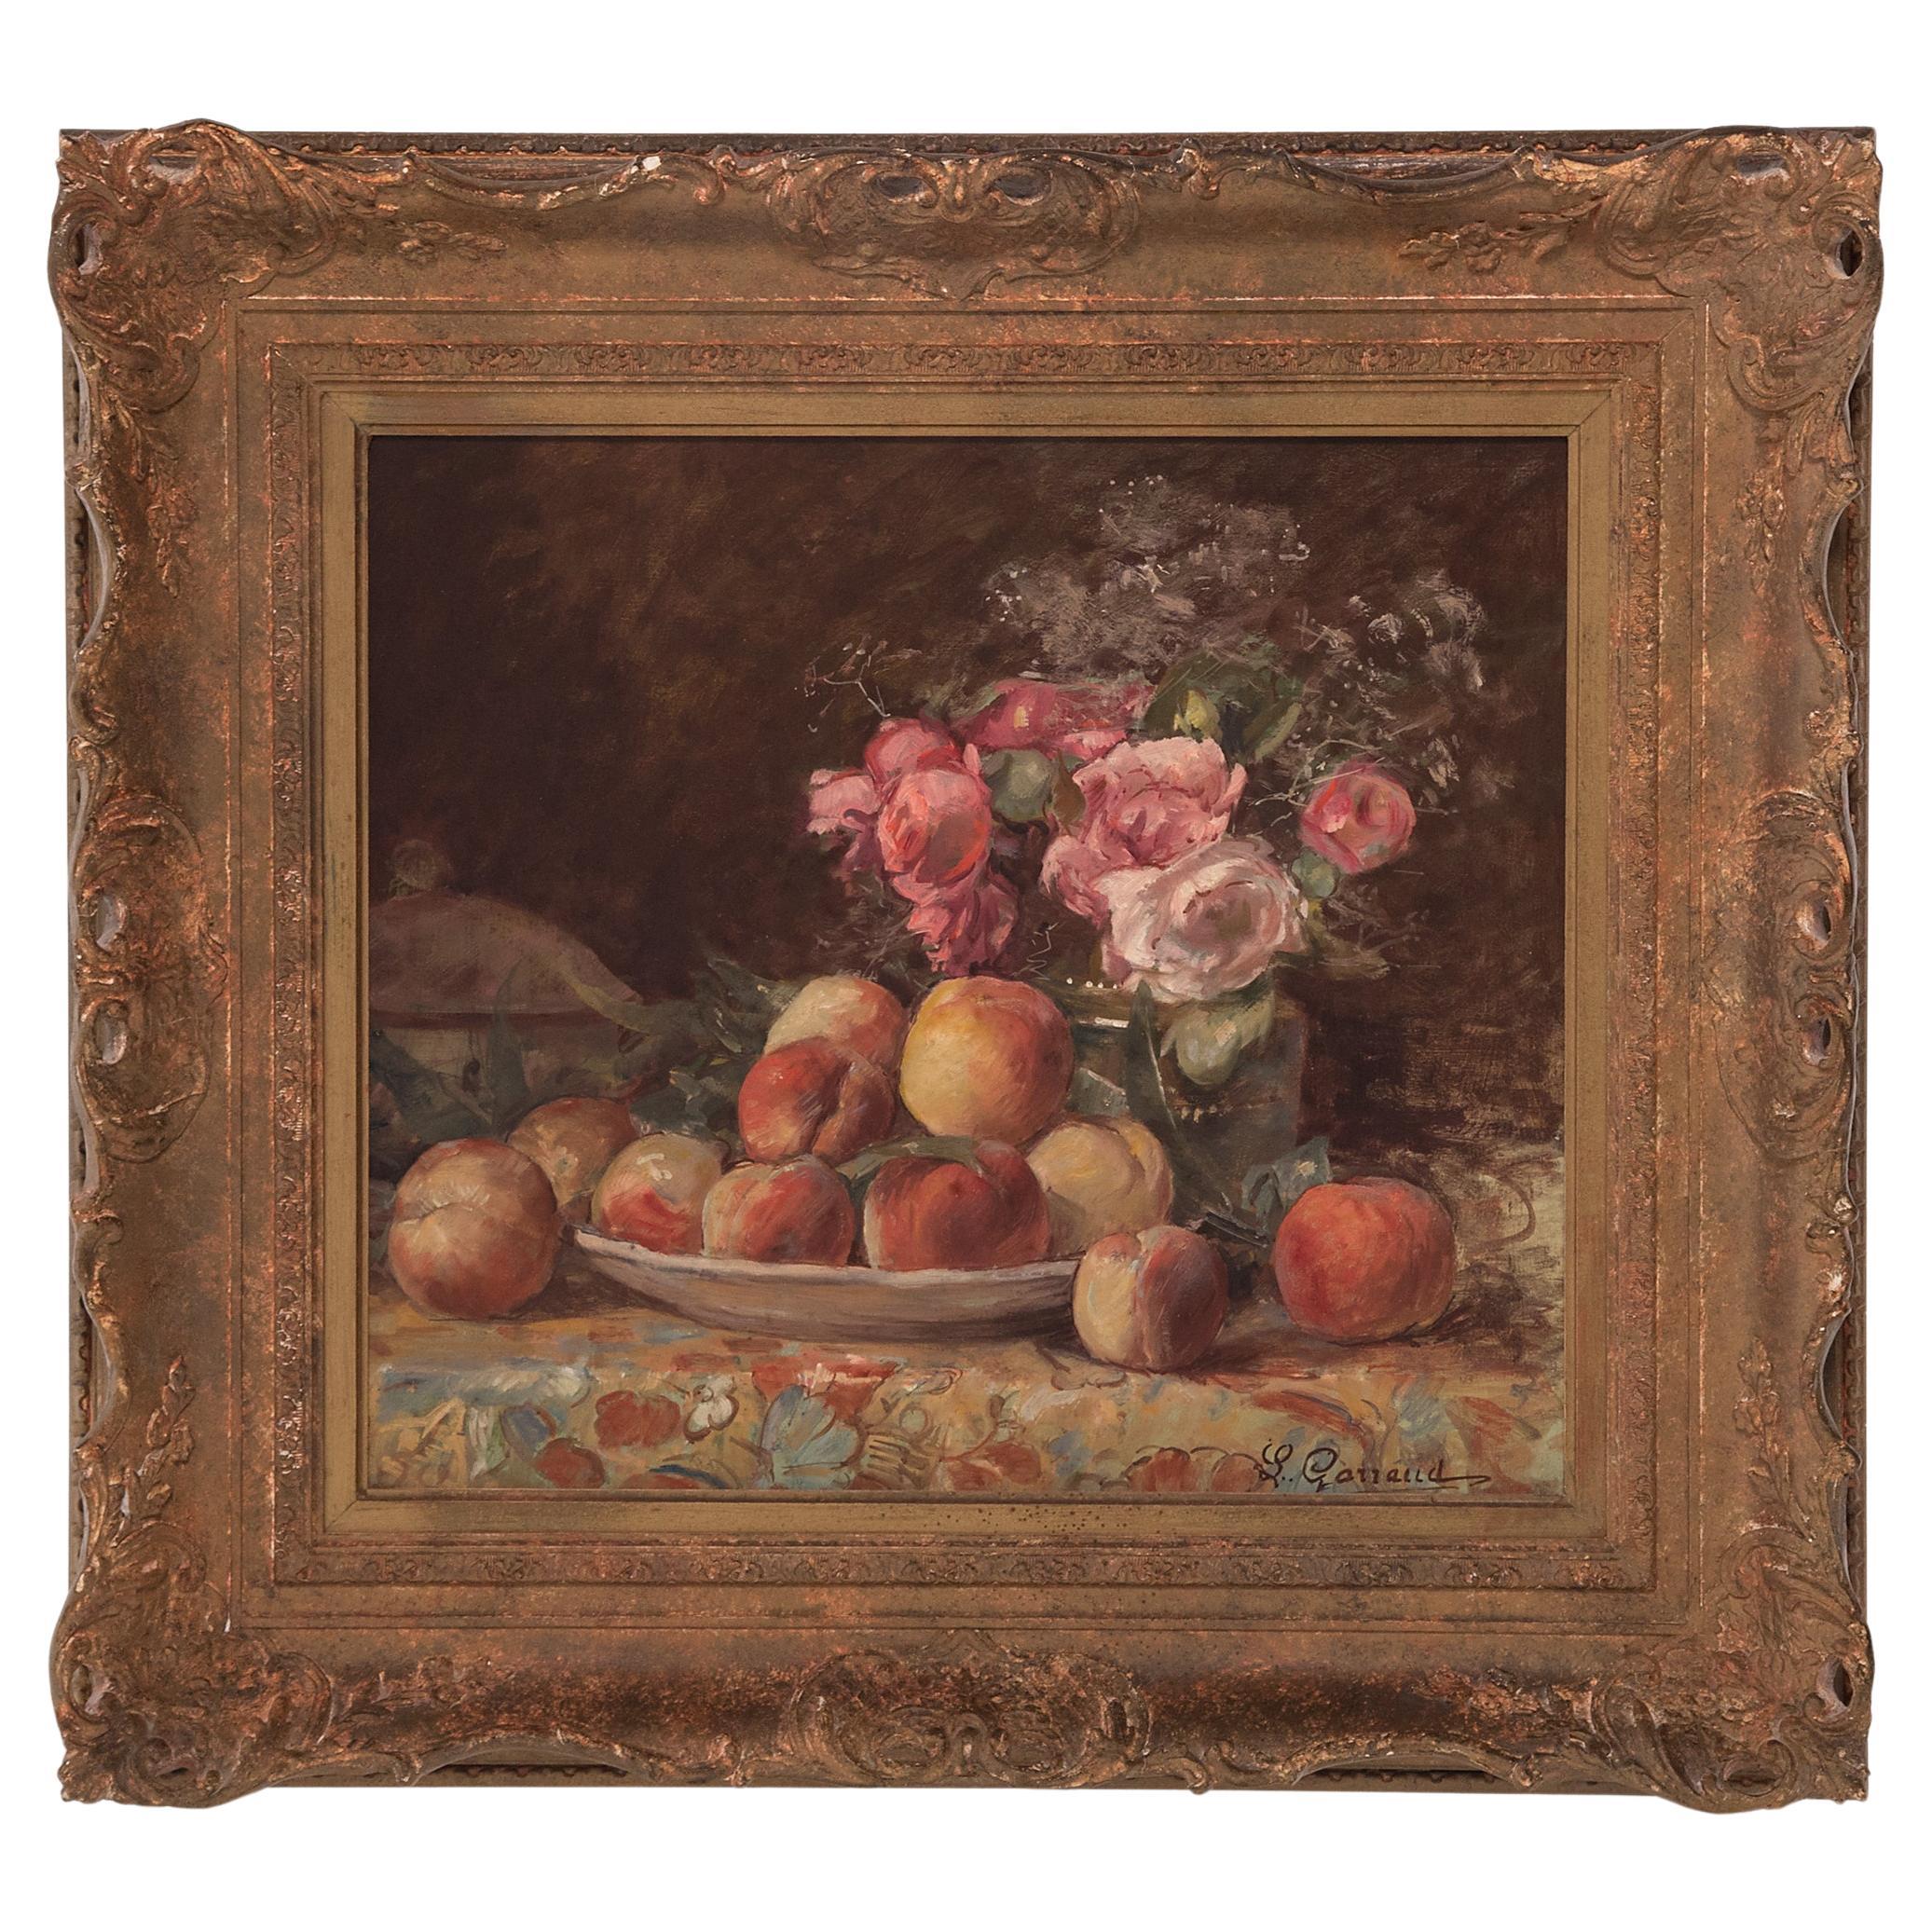 "Obst- und Blumenstillleben" von Léon Garraud